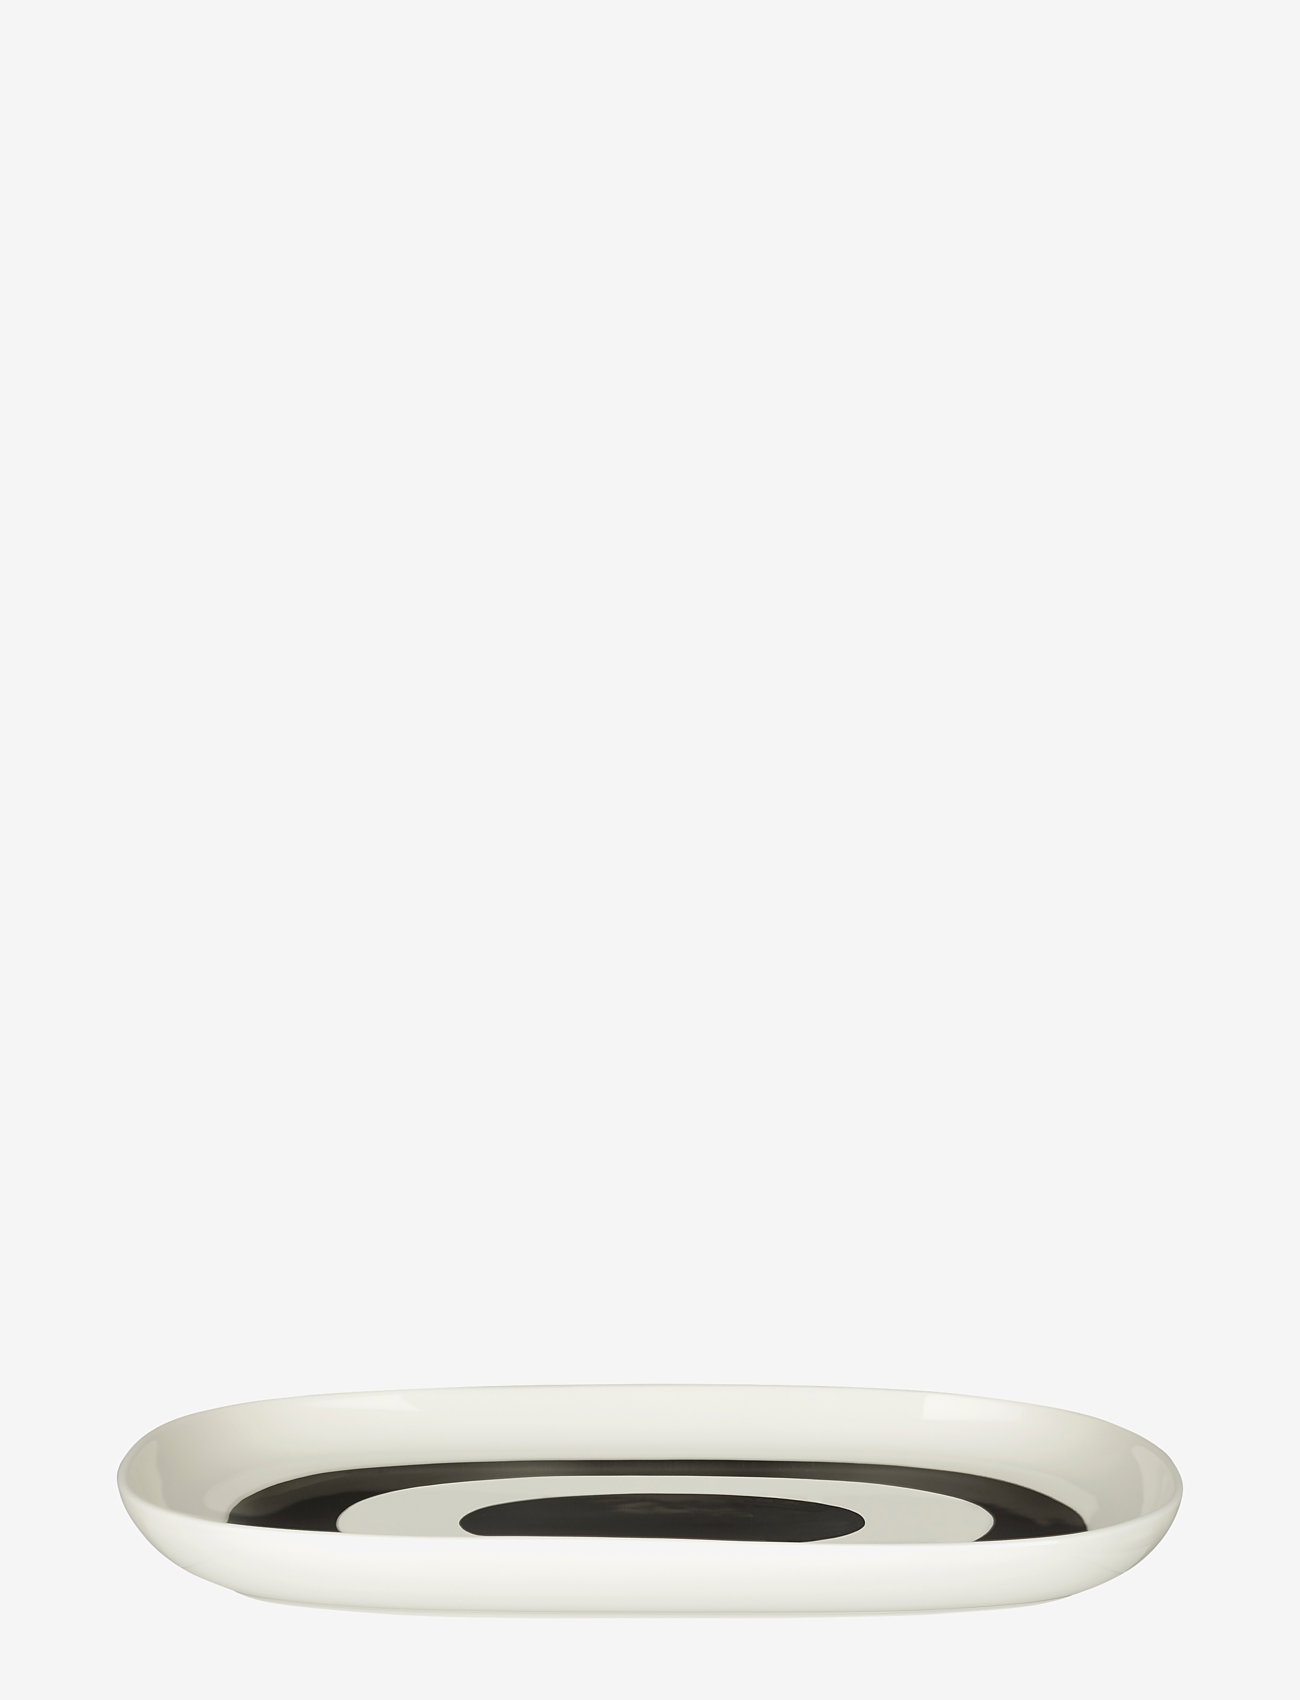 Marimekko Home - MELOONI PLATTER 23X32CM - trauki uz kājas un šķīvji servēšanai - white, black - 1